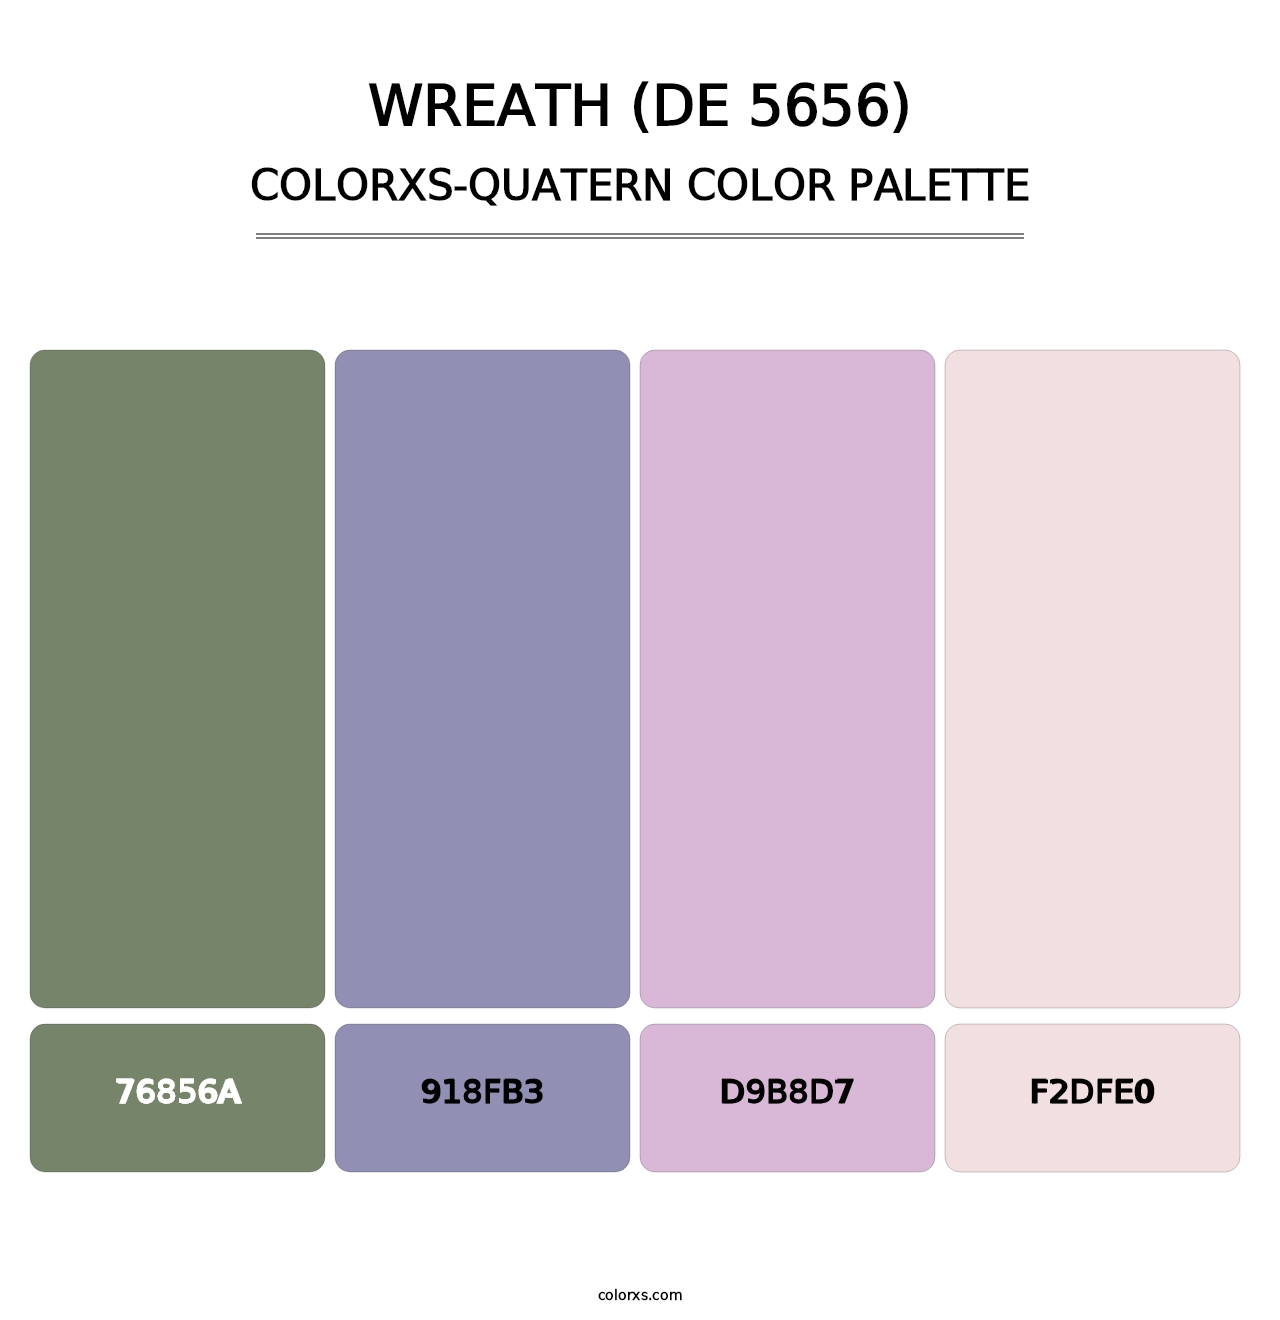 Wreath (DE 5656) - Colorxs Quatern Palette